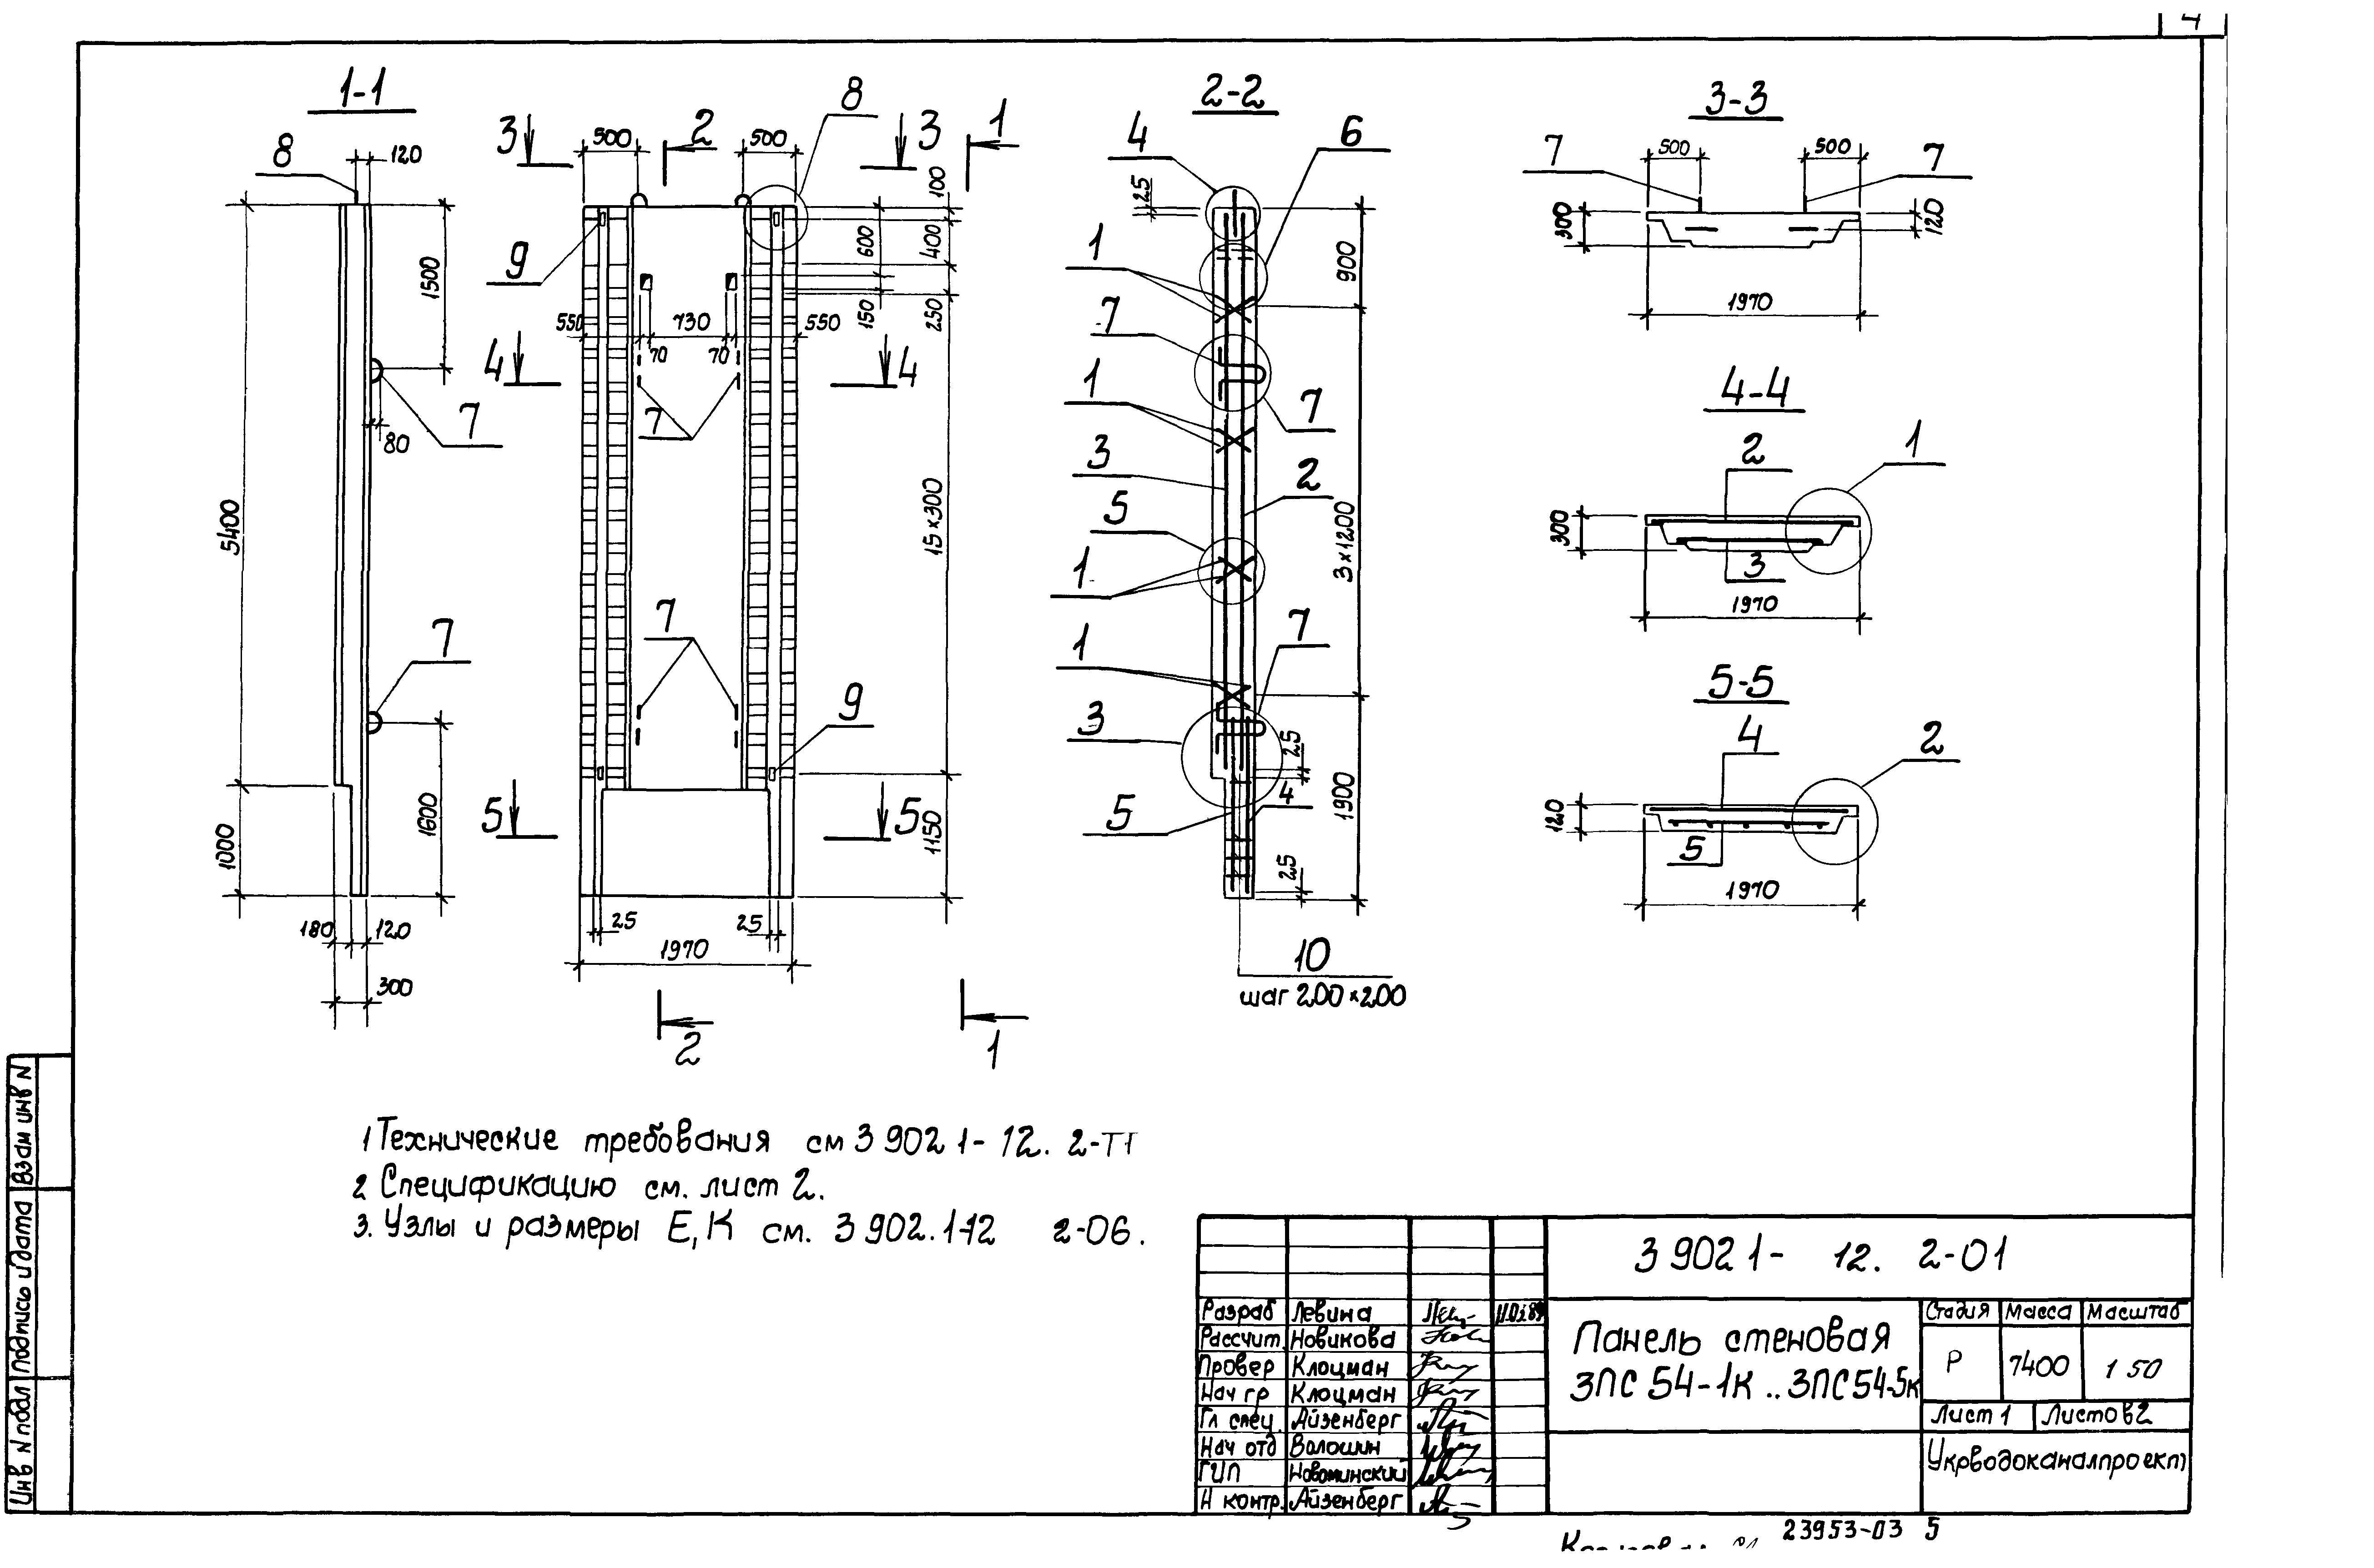 Панель стеновая 3ПС54-2к Серия 3.902.1-12, вып.2